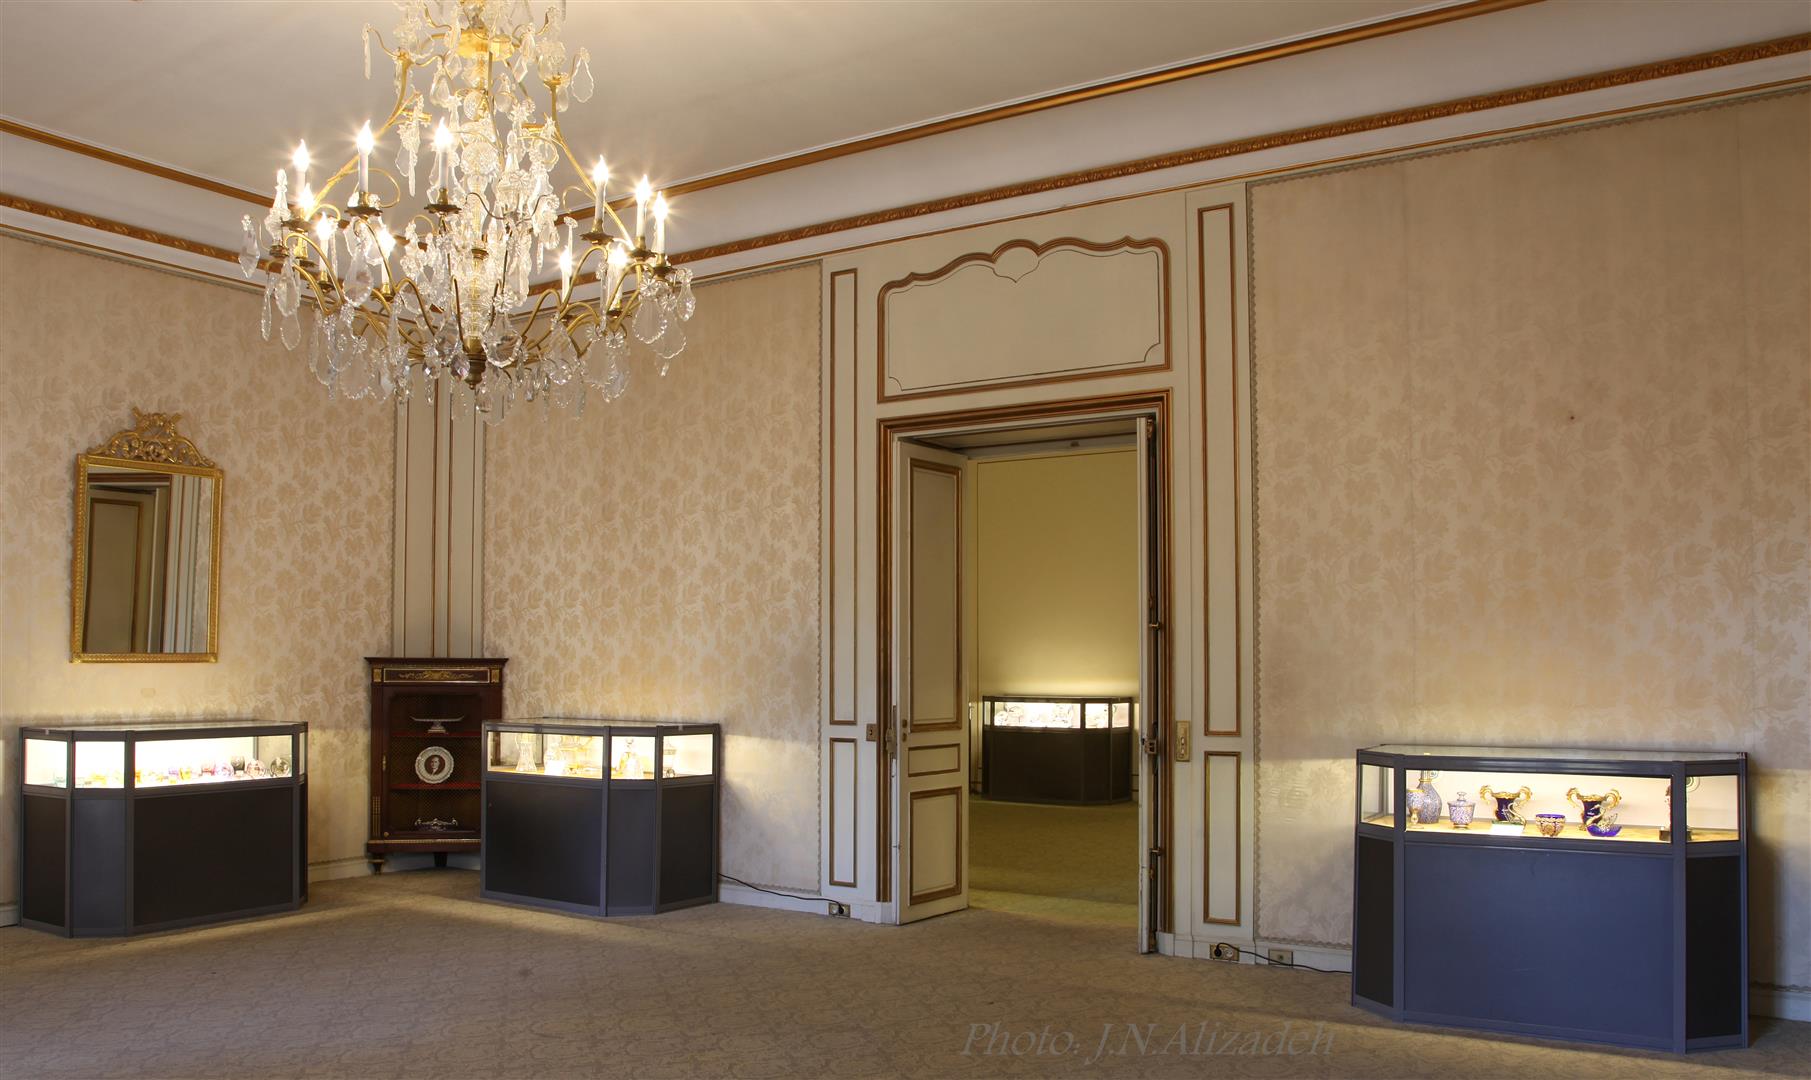 دیوارکوب های فرانسوی موزه ظروف سلطنتی